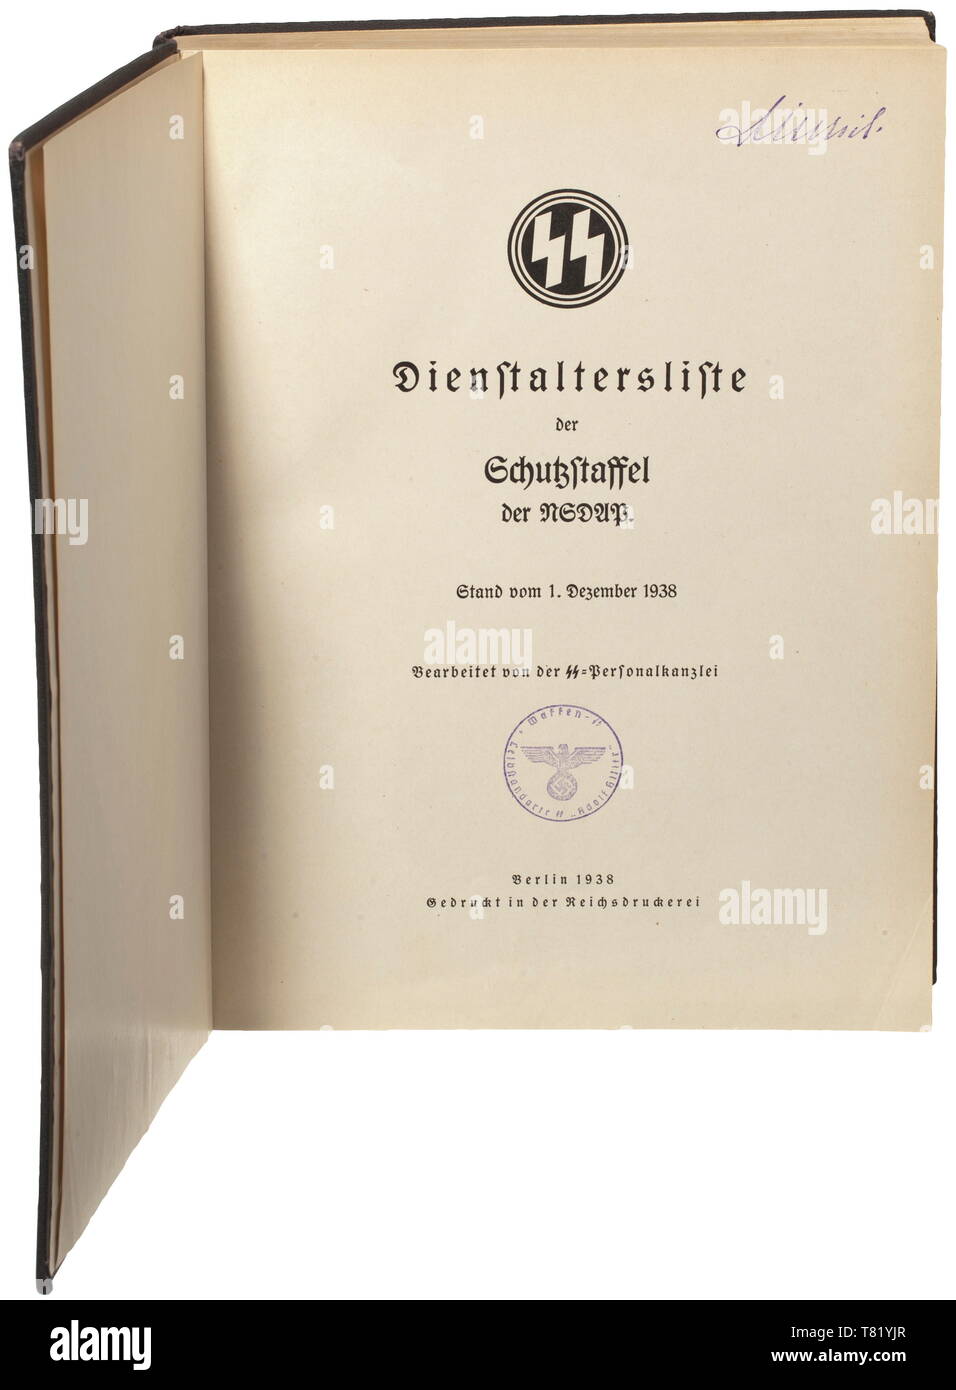 Sepp Dietrich - une liste d'ancienneté comme agent de Schutzstaffel du 1 décembre 1938. Préparé par le bureau du personnel du Reichsführer-SS. Vers 13 800 officiers, classés par catégorie de service (Obergruppenführer à Untersturmführer) avec l'information sur la position officielle du parti, et les numéros de SS, date de naissance, date de chaque promotion, Totenkopf Ring award, prix de l'Épée d'honneur Reichsführer, Ordre de sang etc. inclus est une liste de ces agents qui ont été formés dans les écoles, Führer ont abandonné ou ont été expulsés. Couvercle noir avec blanc gravé les runes et le lettrage. Flyleaf inventaire, Editorial-Use avec sta-seulement Banque D'Images